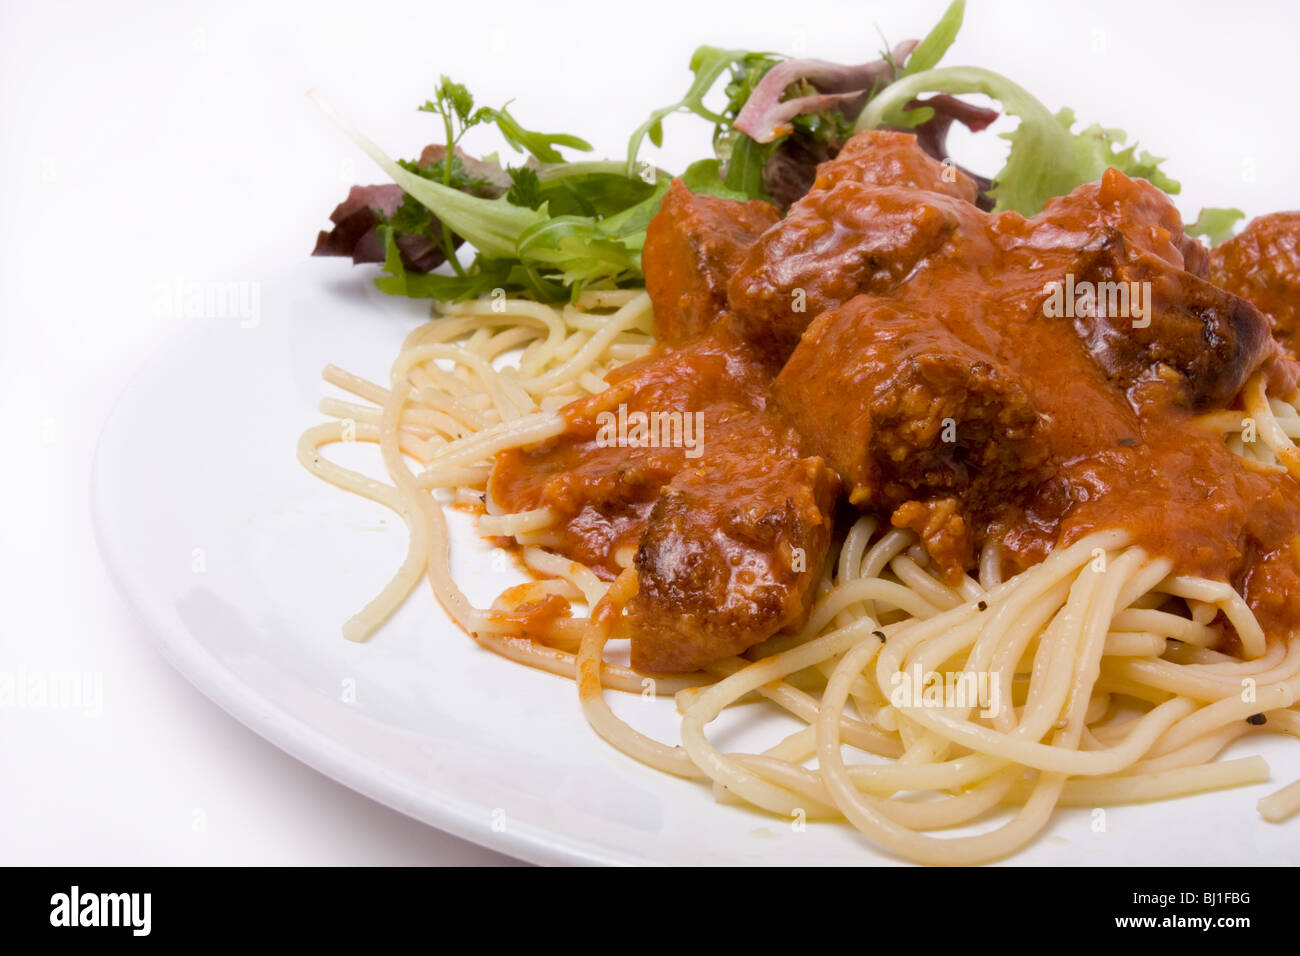 Zuhause gekocht Meatballs mit Spaghetti und Salat garniert Stockfoto